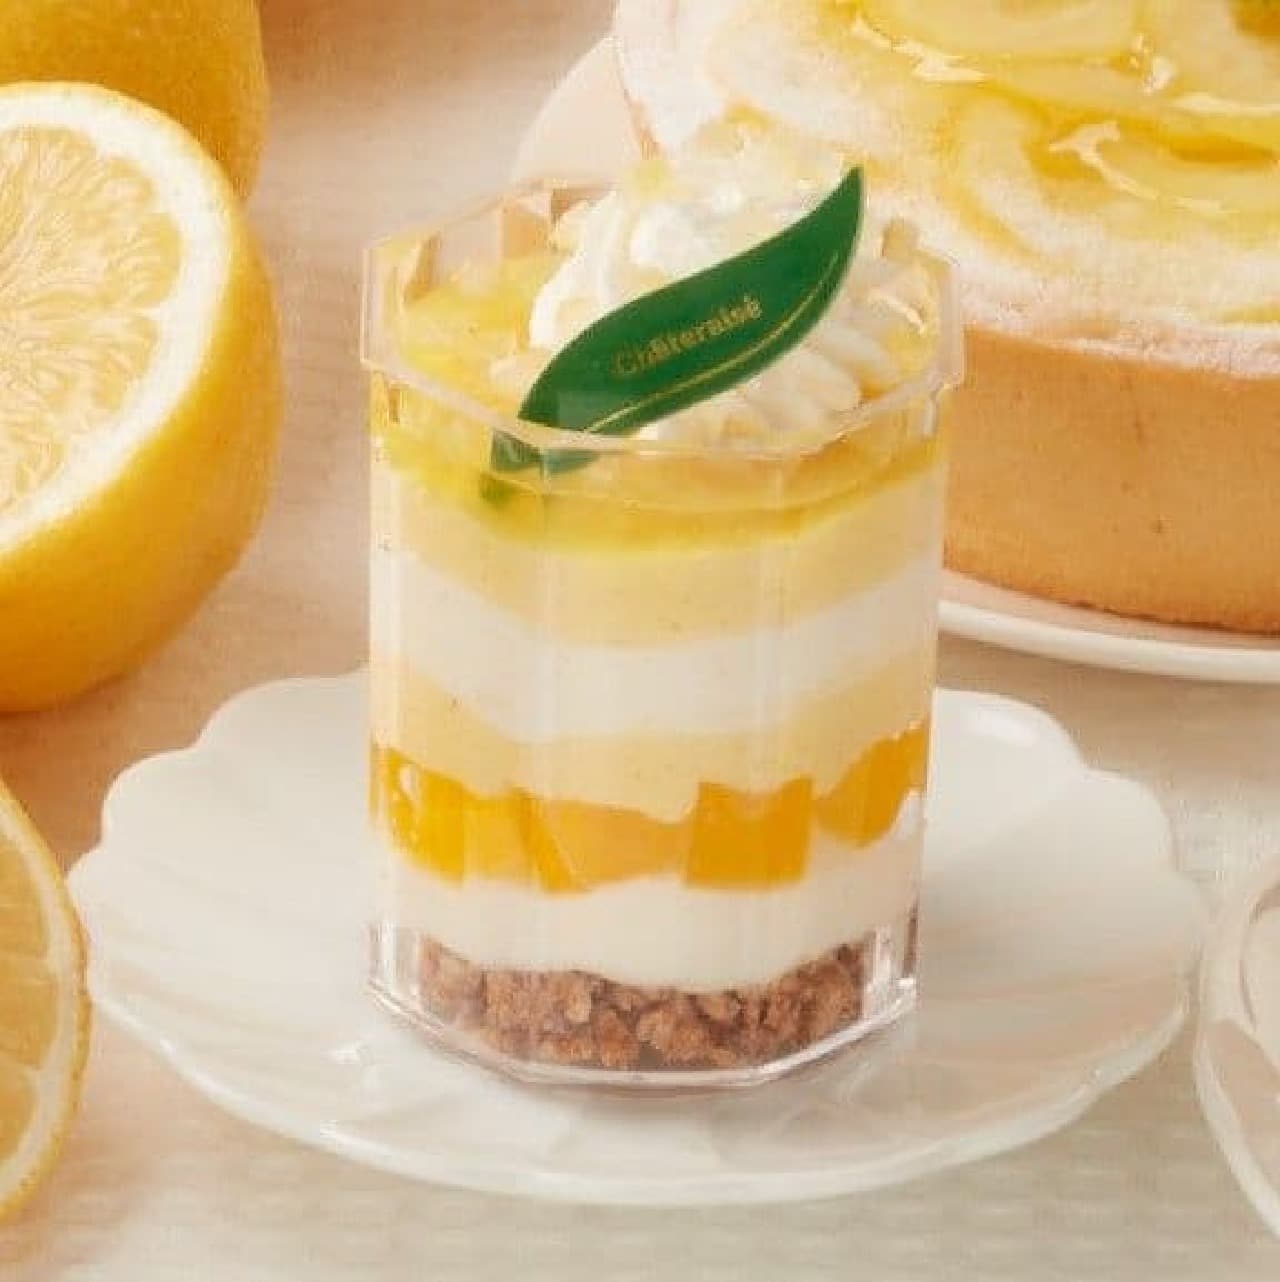 Shateraise "Setouchi Lemon and Honey Cup